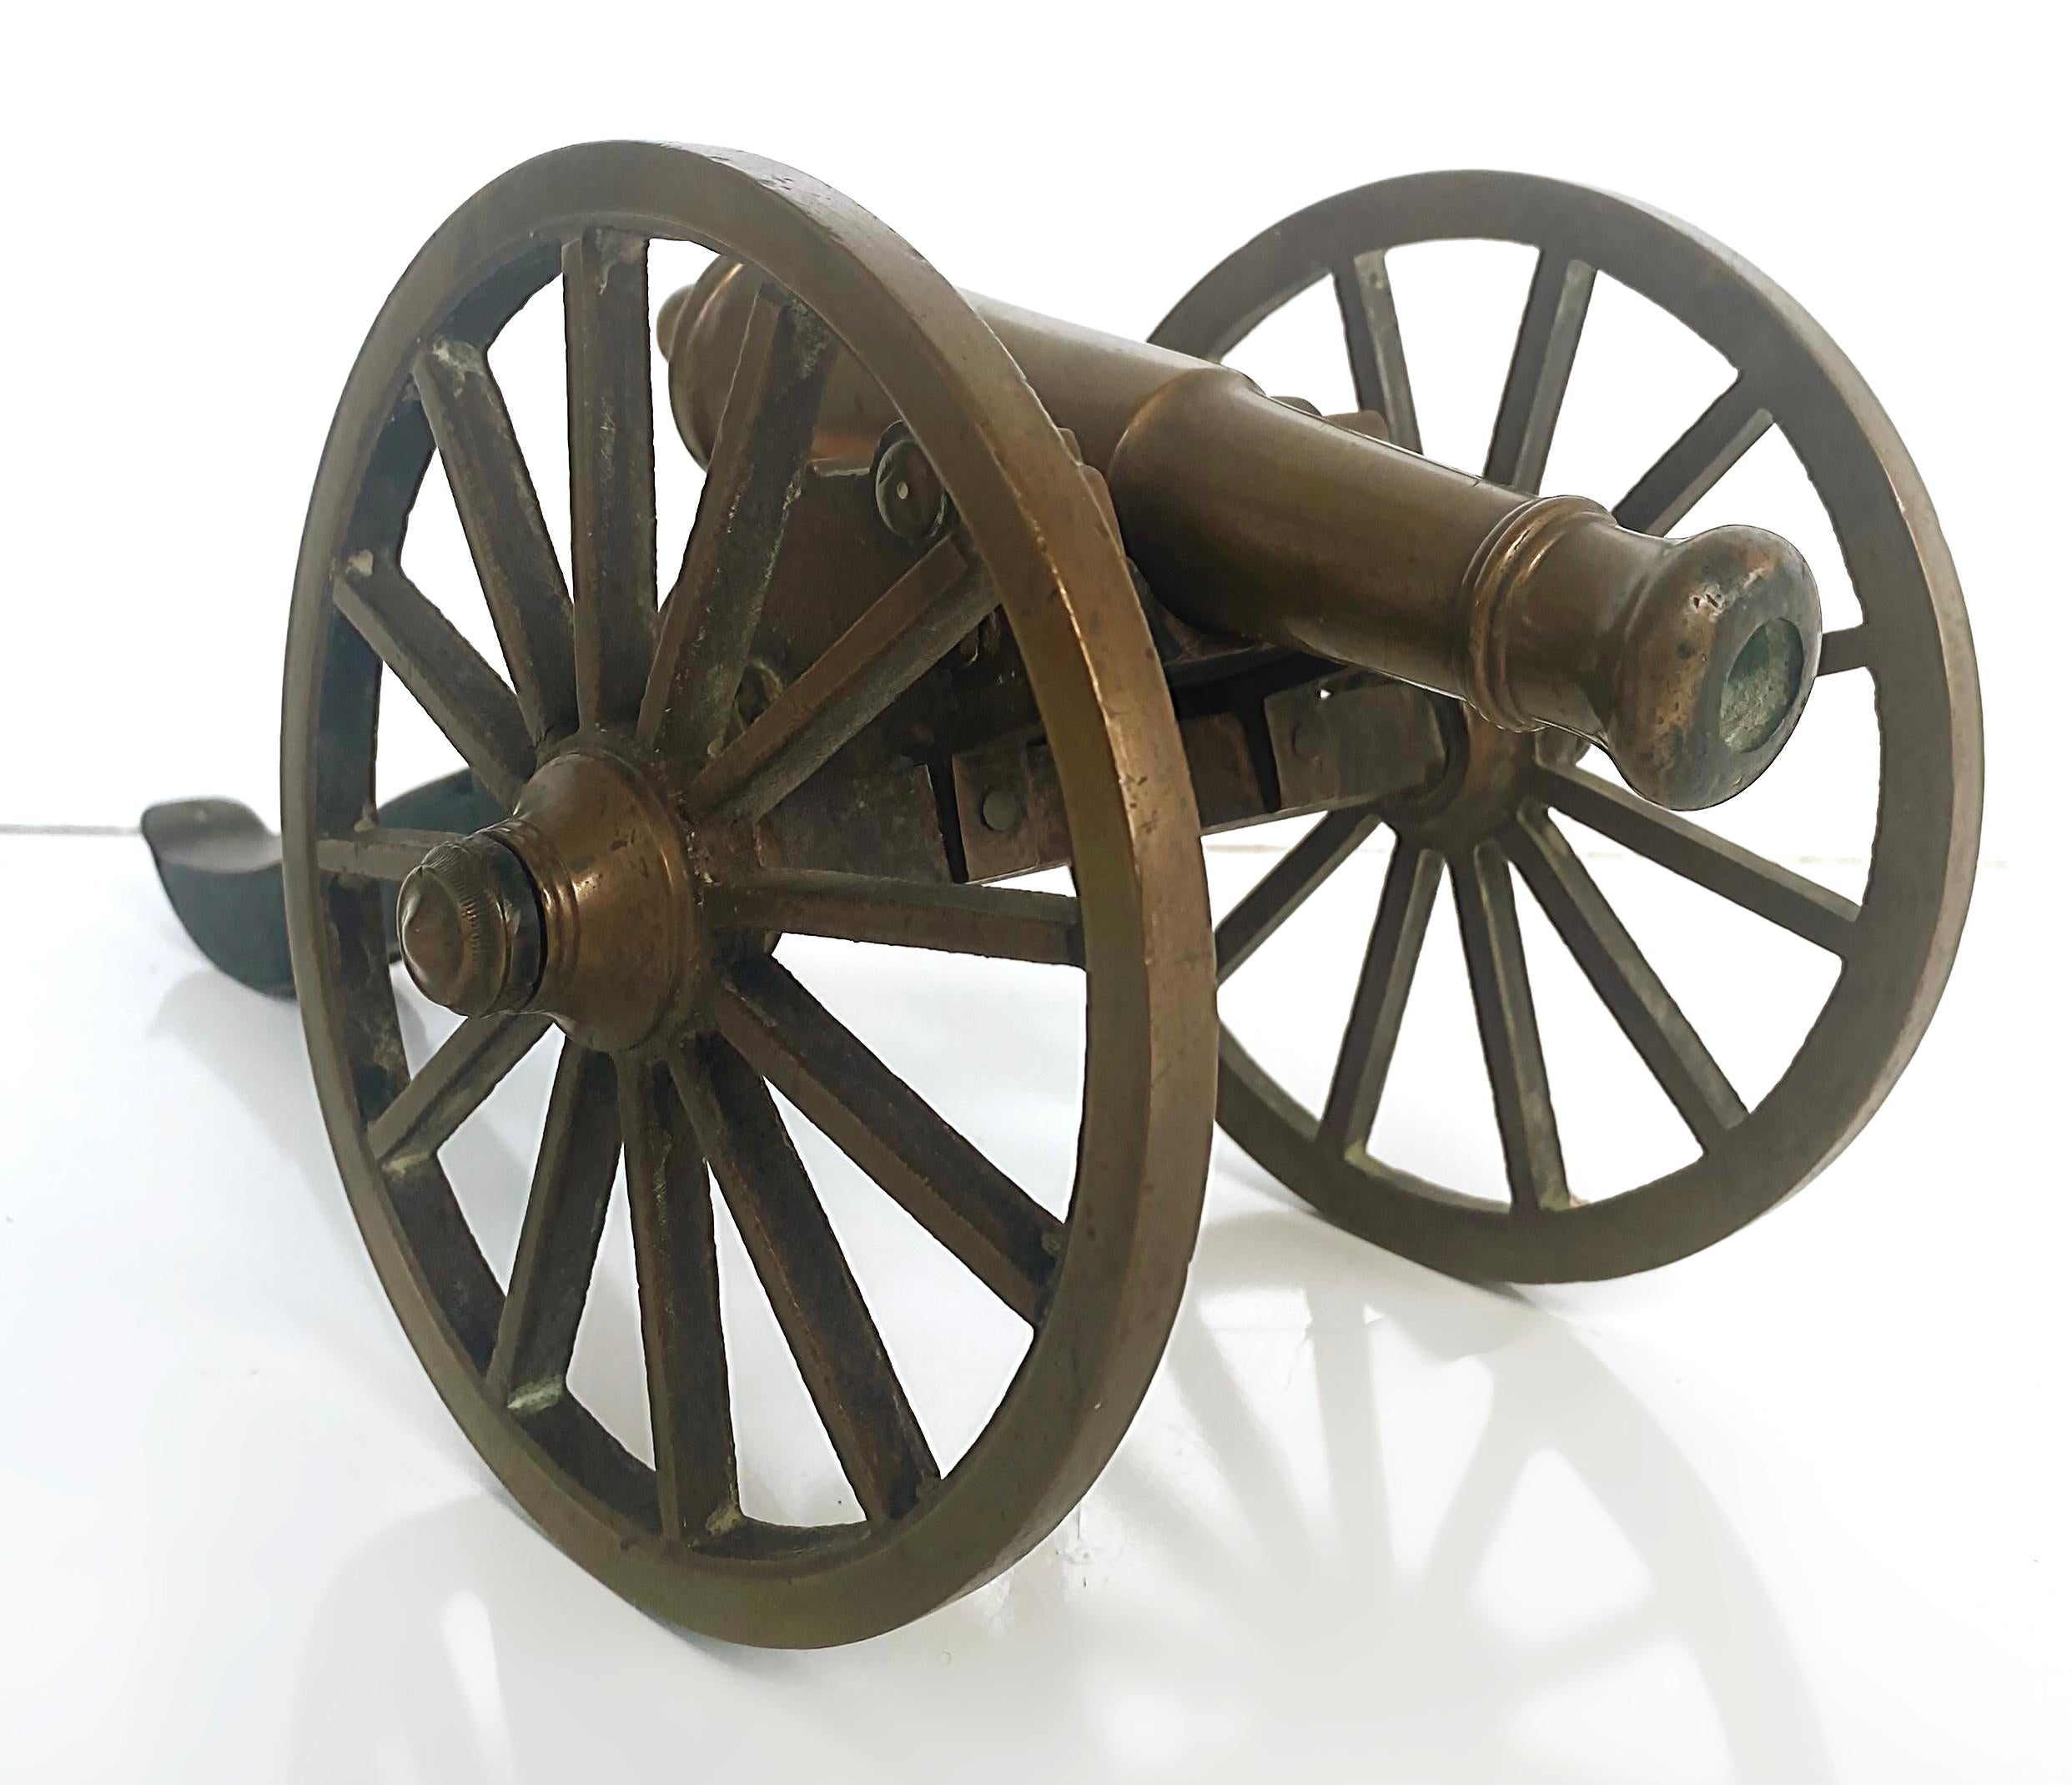 Modèle de canon en bronze et bois du début du 20e siècle 

Ce canon miniature en bronze est monté sur un chariot en bois avec une grande roue en bronze. Elle sera joliment exposée sur un bureau ou sur des étagères. 
